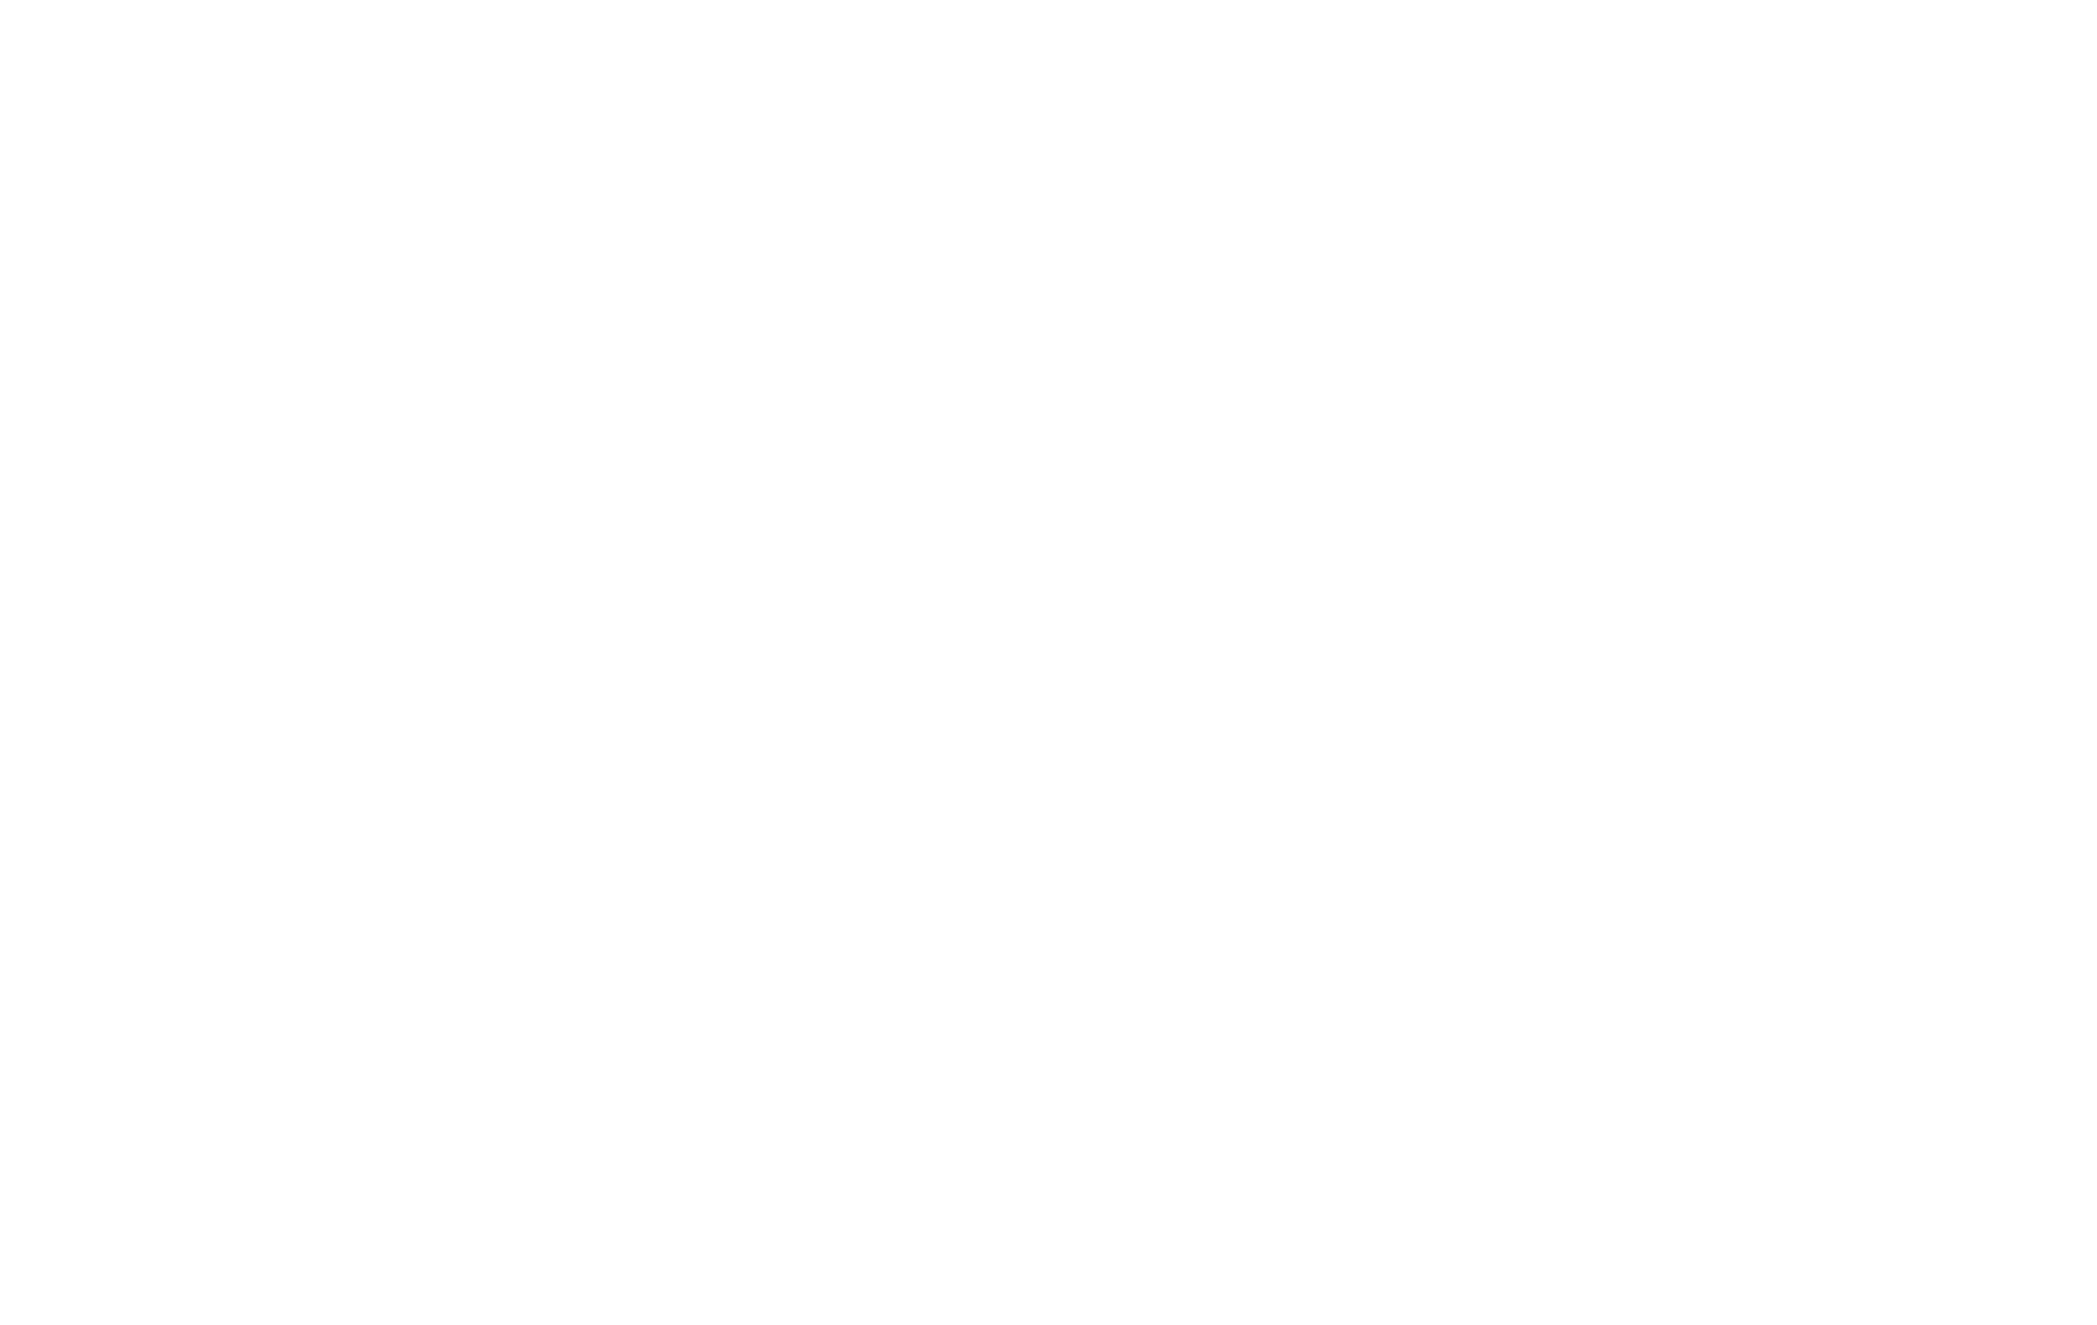 毎週KBM 福岡のビジネスマッチングの新潮流！ 「ホスト企業」「ゲスト企業」両方募集！